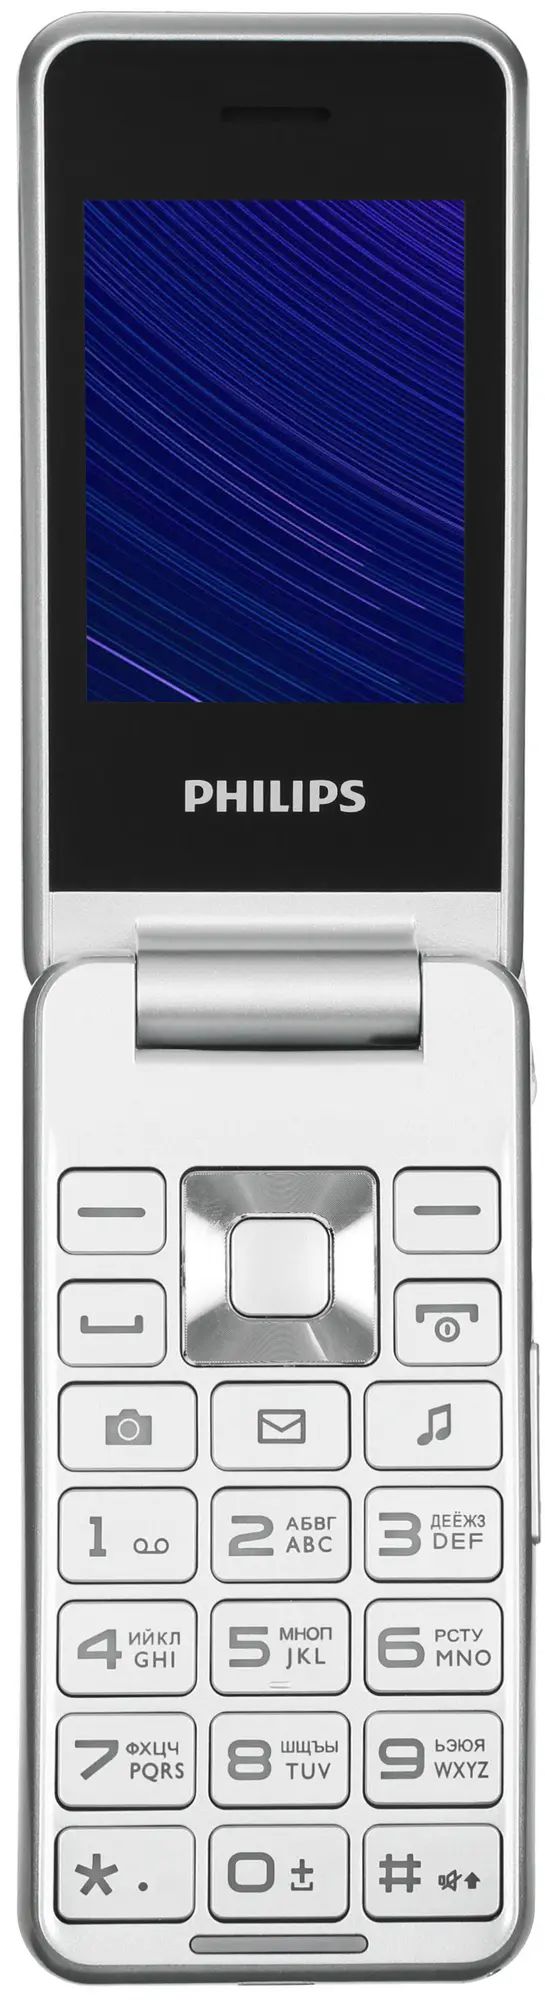 Филипс 2601. Philips Xenium e2601. Philips Xenium e2601 серебристый. Сотовый телефон Philips Xenium e2601 белый. Сотовый телефон Philips Xenium e2601, серебристый.